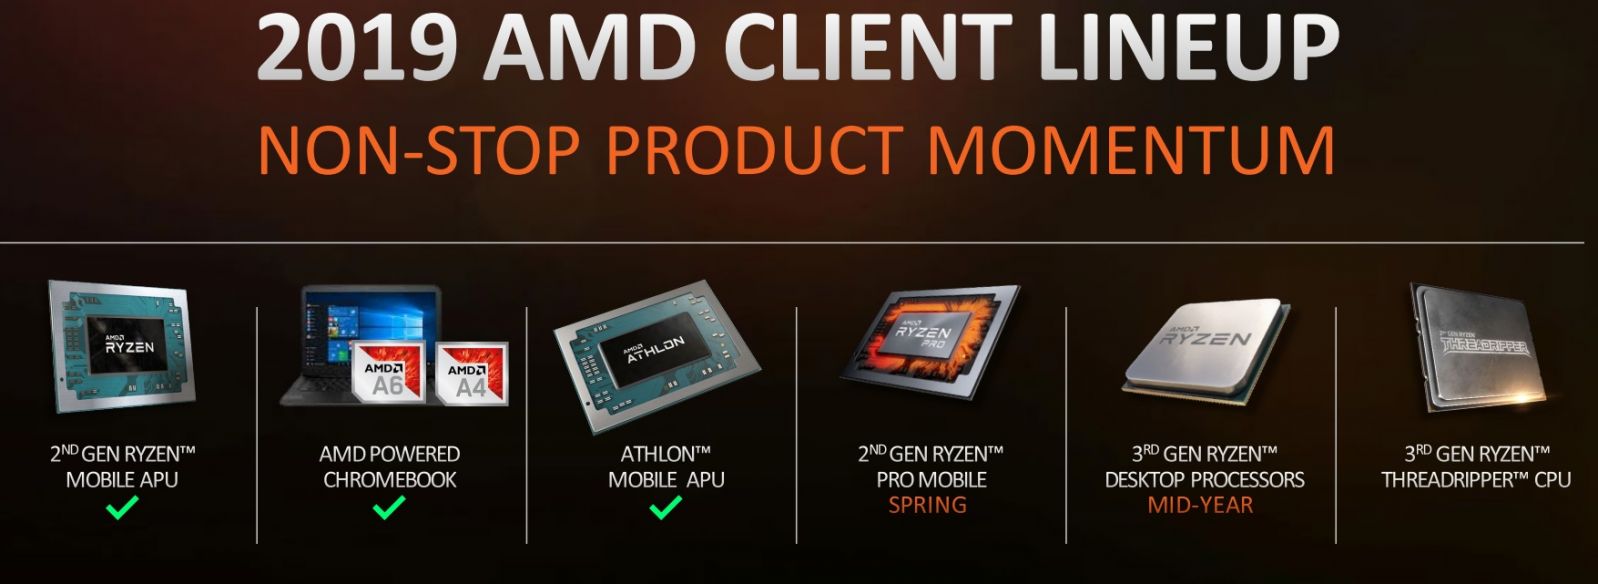 AMD-CPU-Roadmap-March-2019.jpg